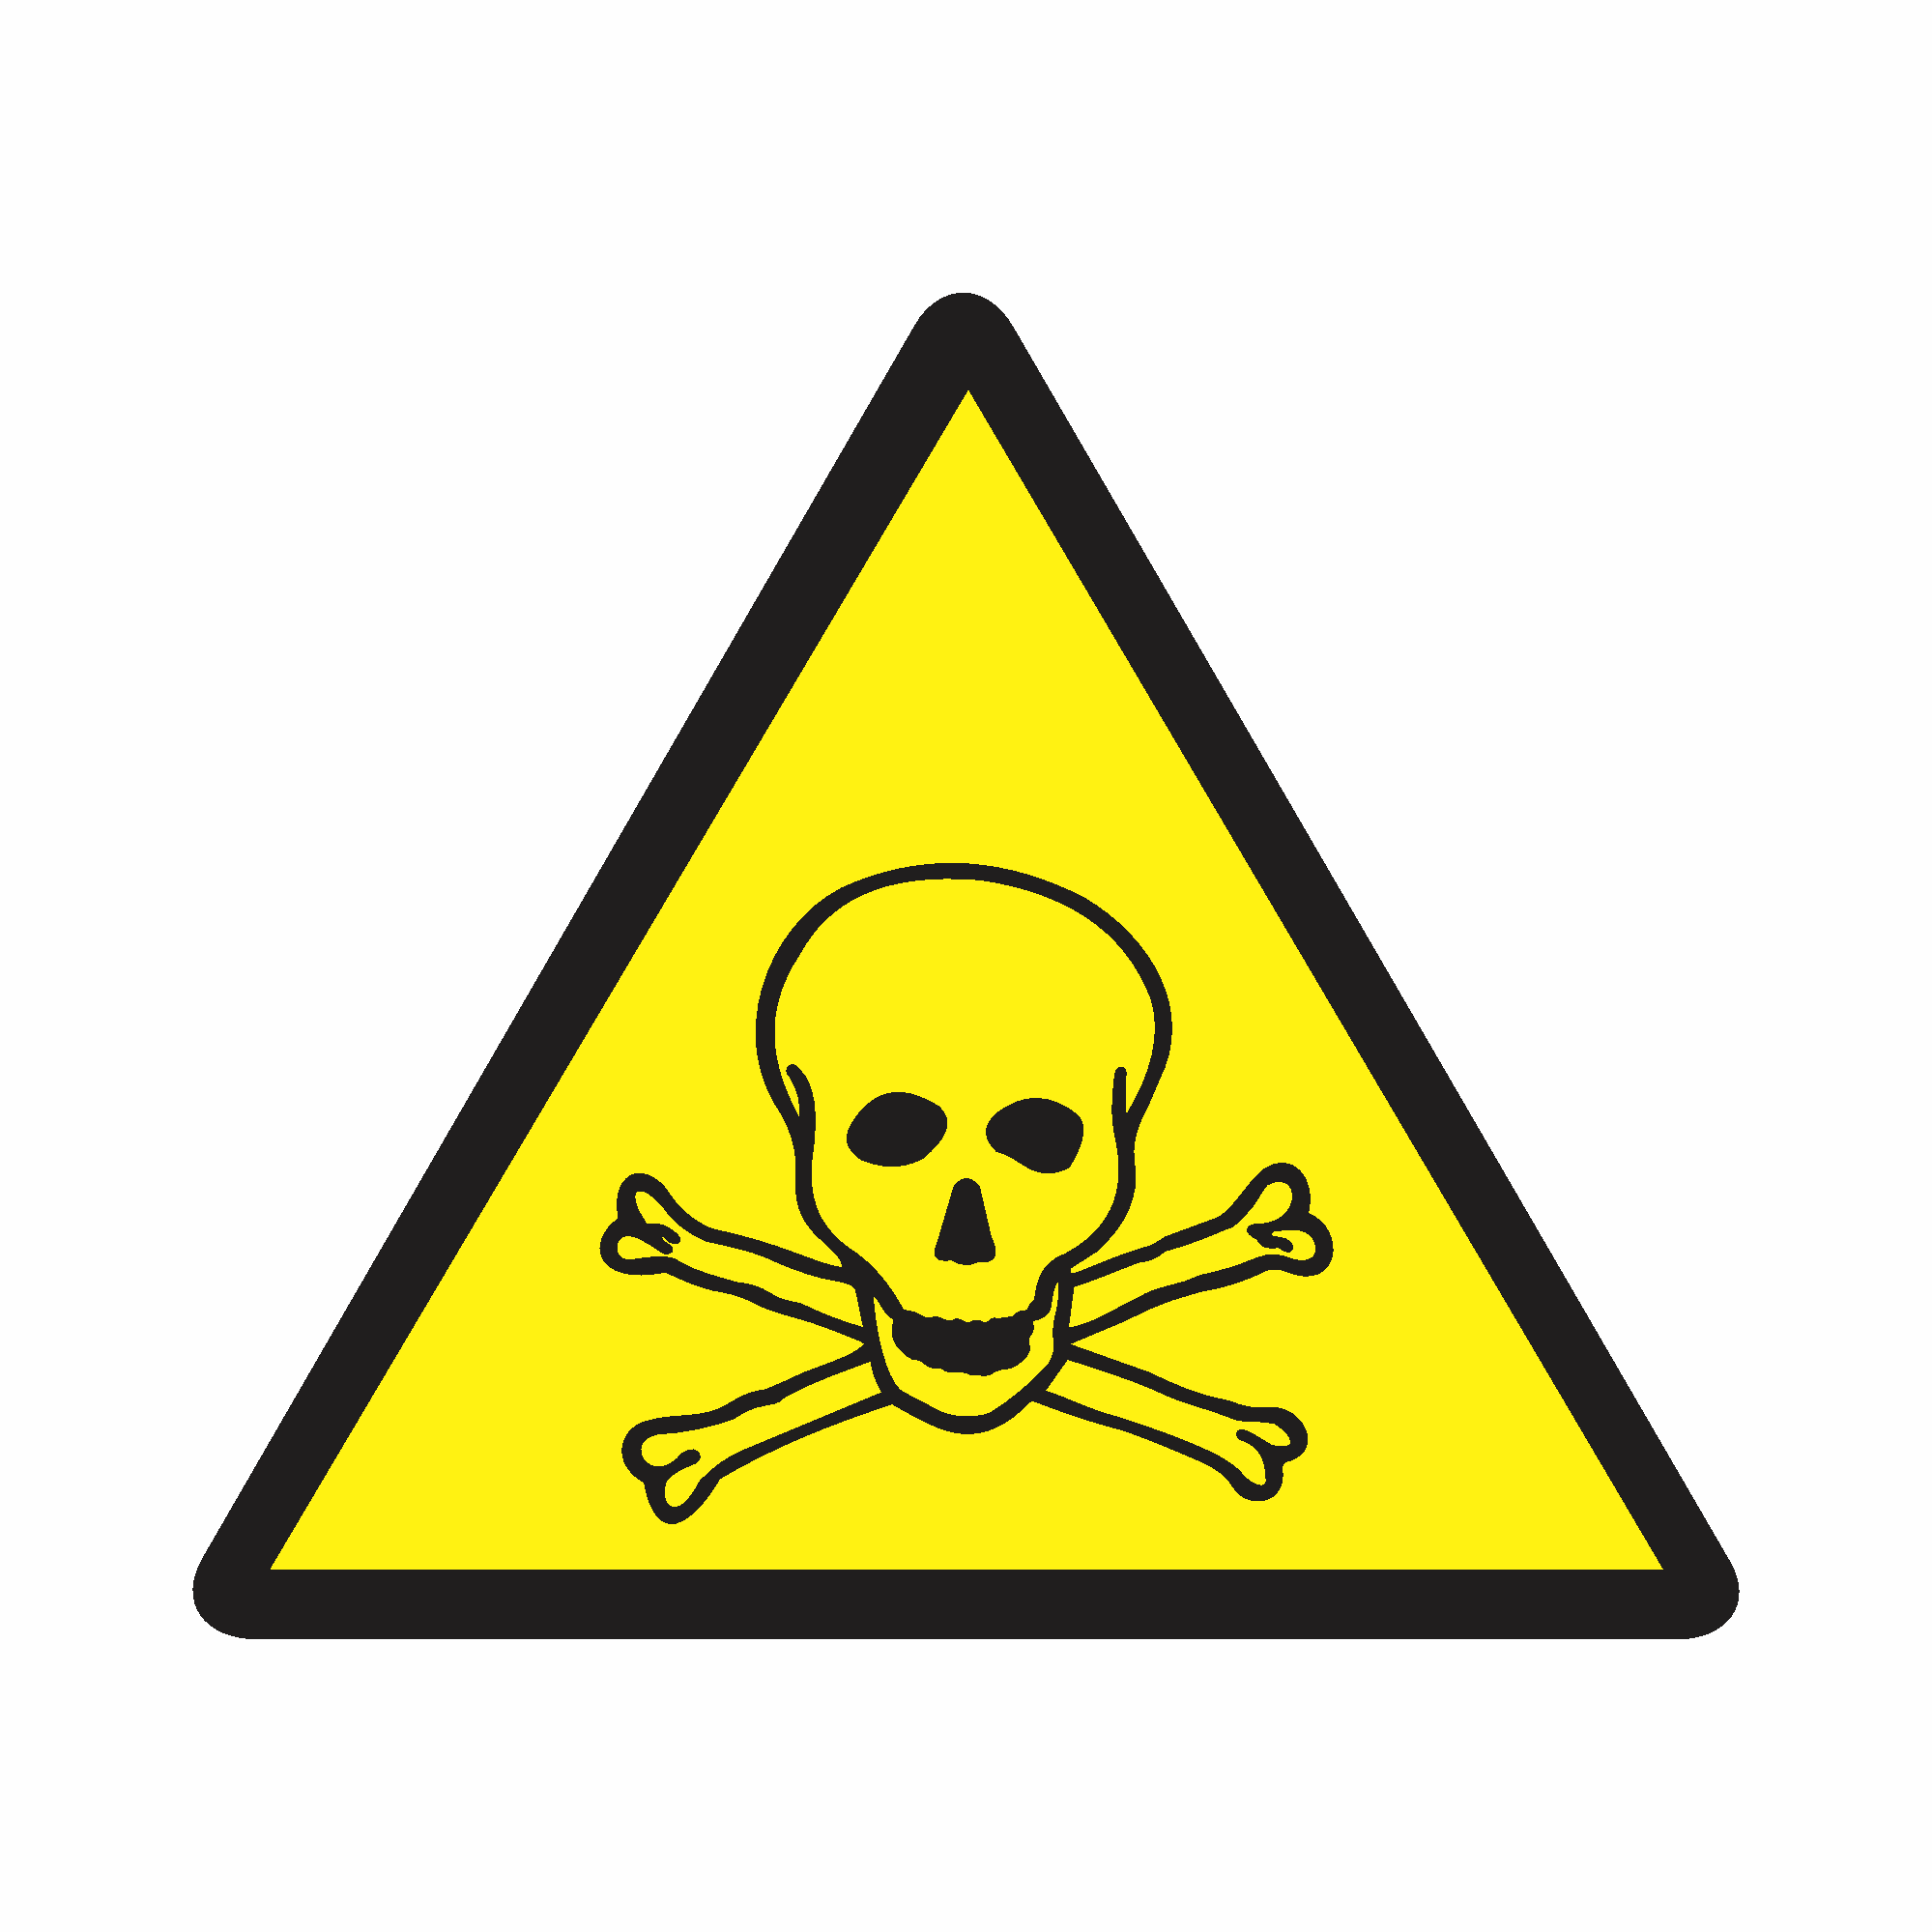 A7 - Cuidado, risco de exposição a produtos tóxicos